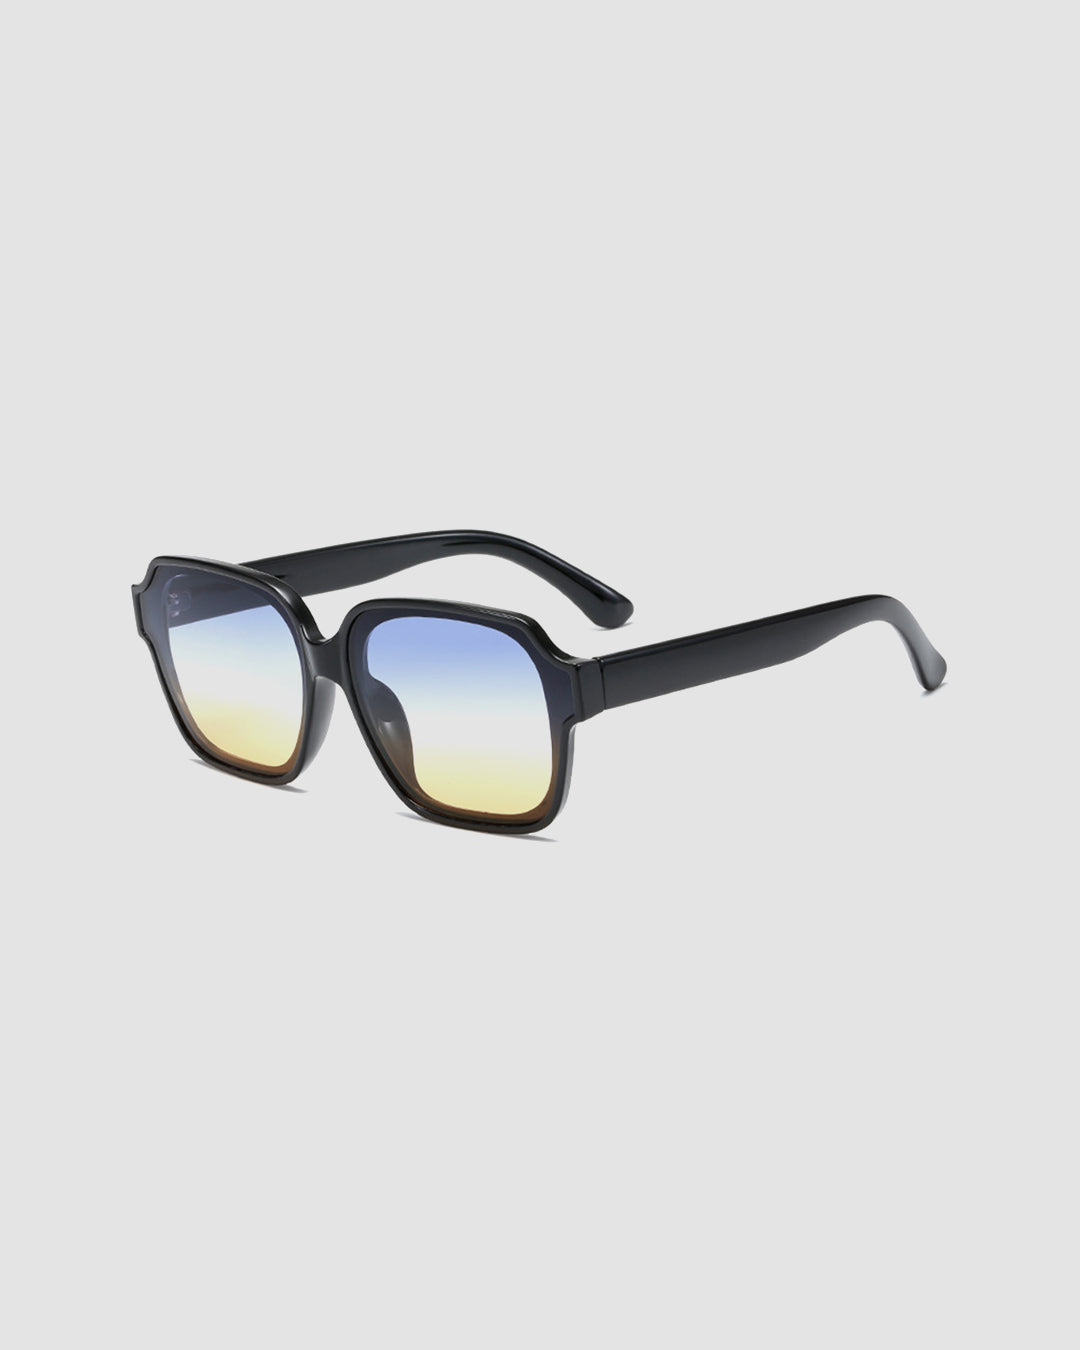 Verona Sunglasses